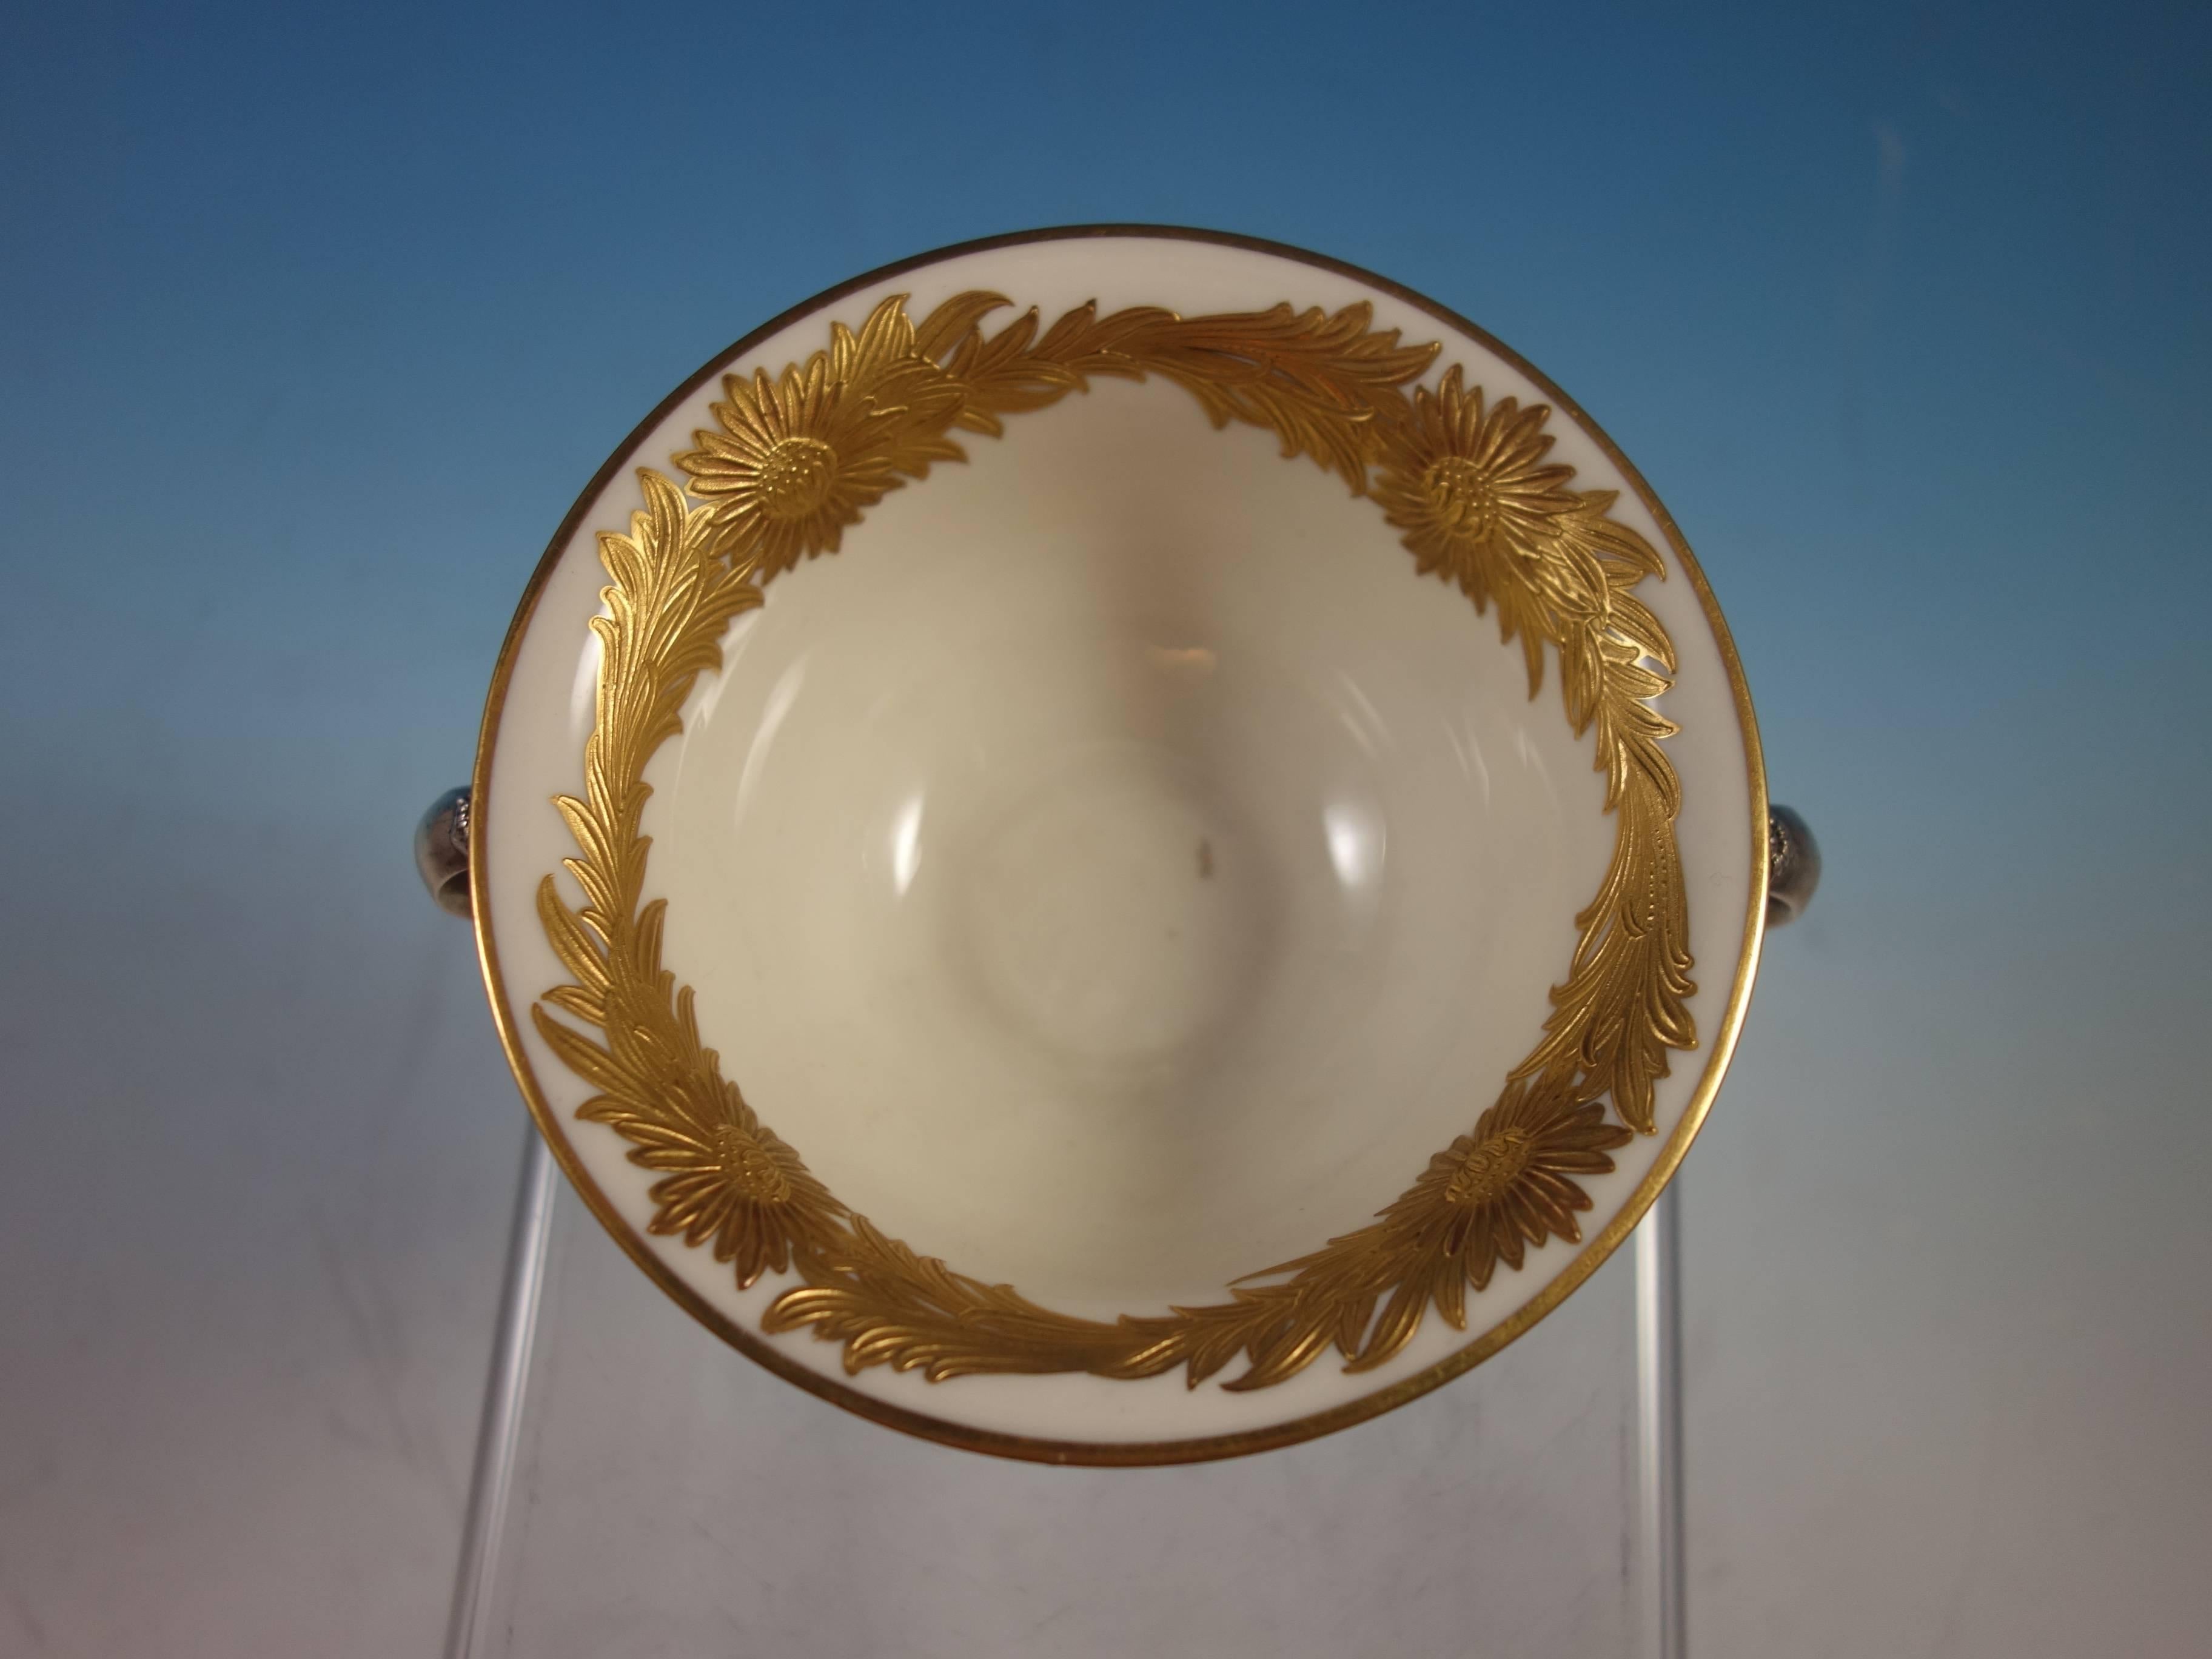 Chrysantheme von Tiffany & Co. Bouillonbecher aus Sterlingsilber mit goldener Chrysanthemeneinlage. Die Tasse ist mit der Nummer 14782/4848 gekennzeichnet und hat eine 